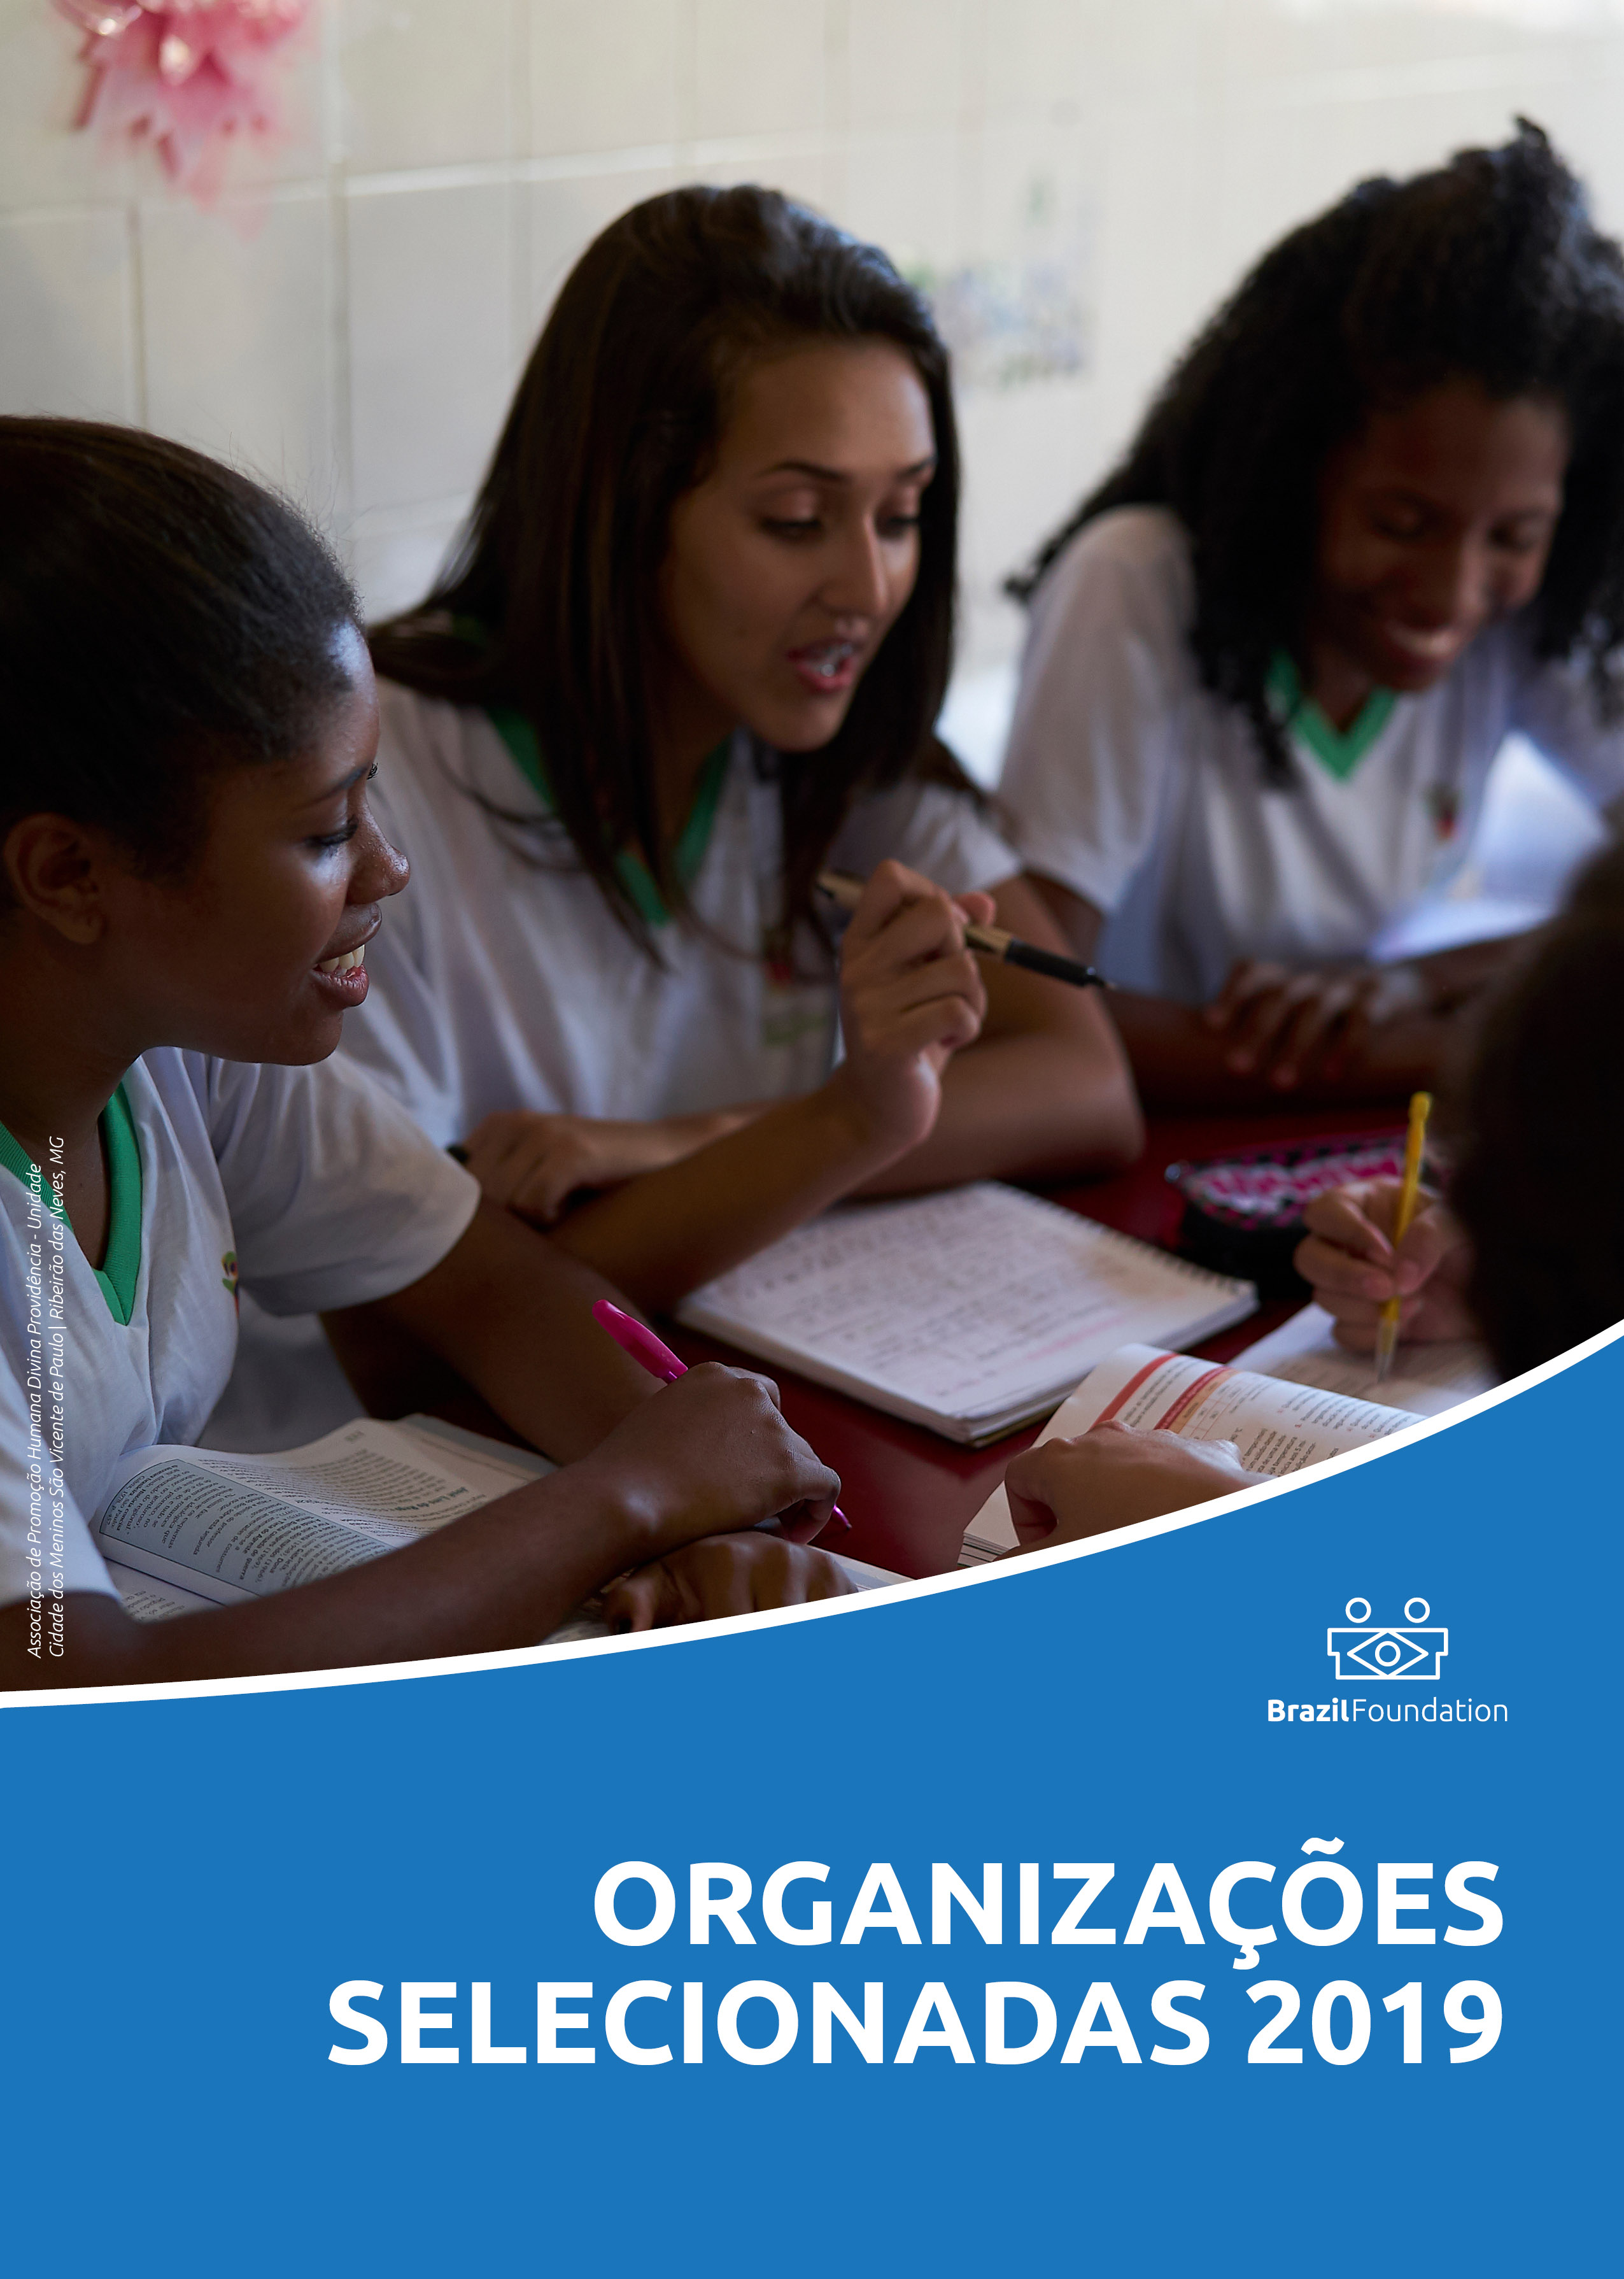 BrazilFoundation Filantropia educação saúde cultura direitos humanos